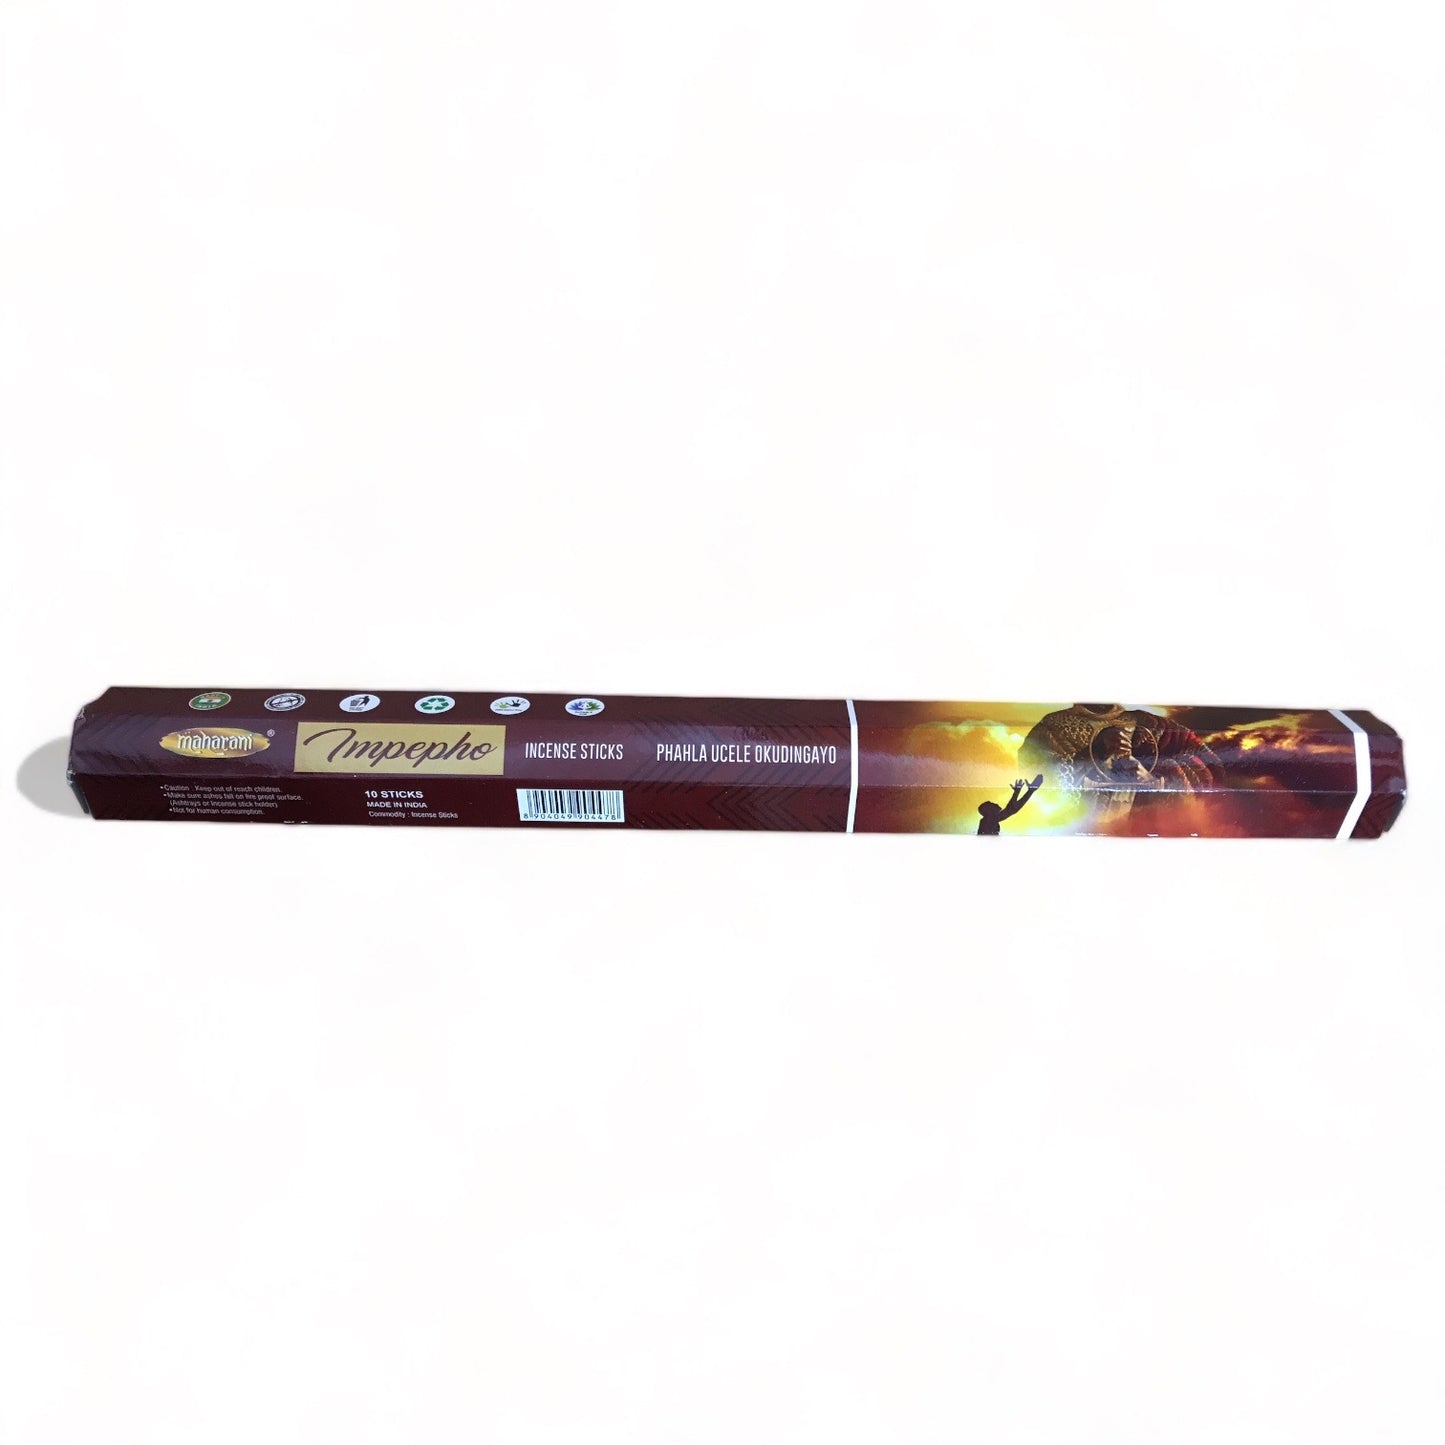 Impepho XL Incense Sticks - Maharani